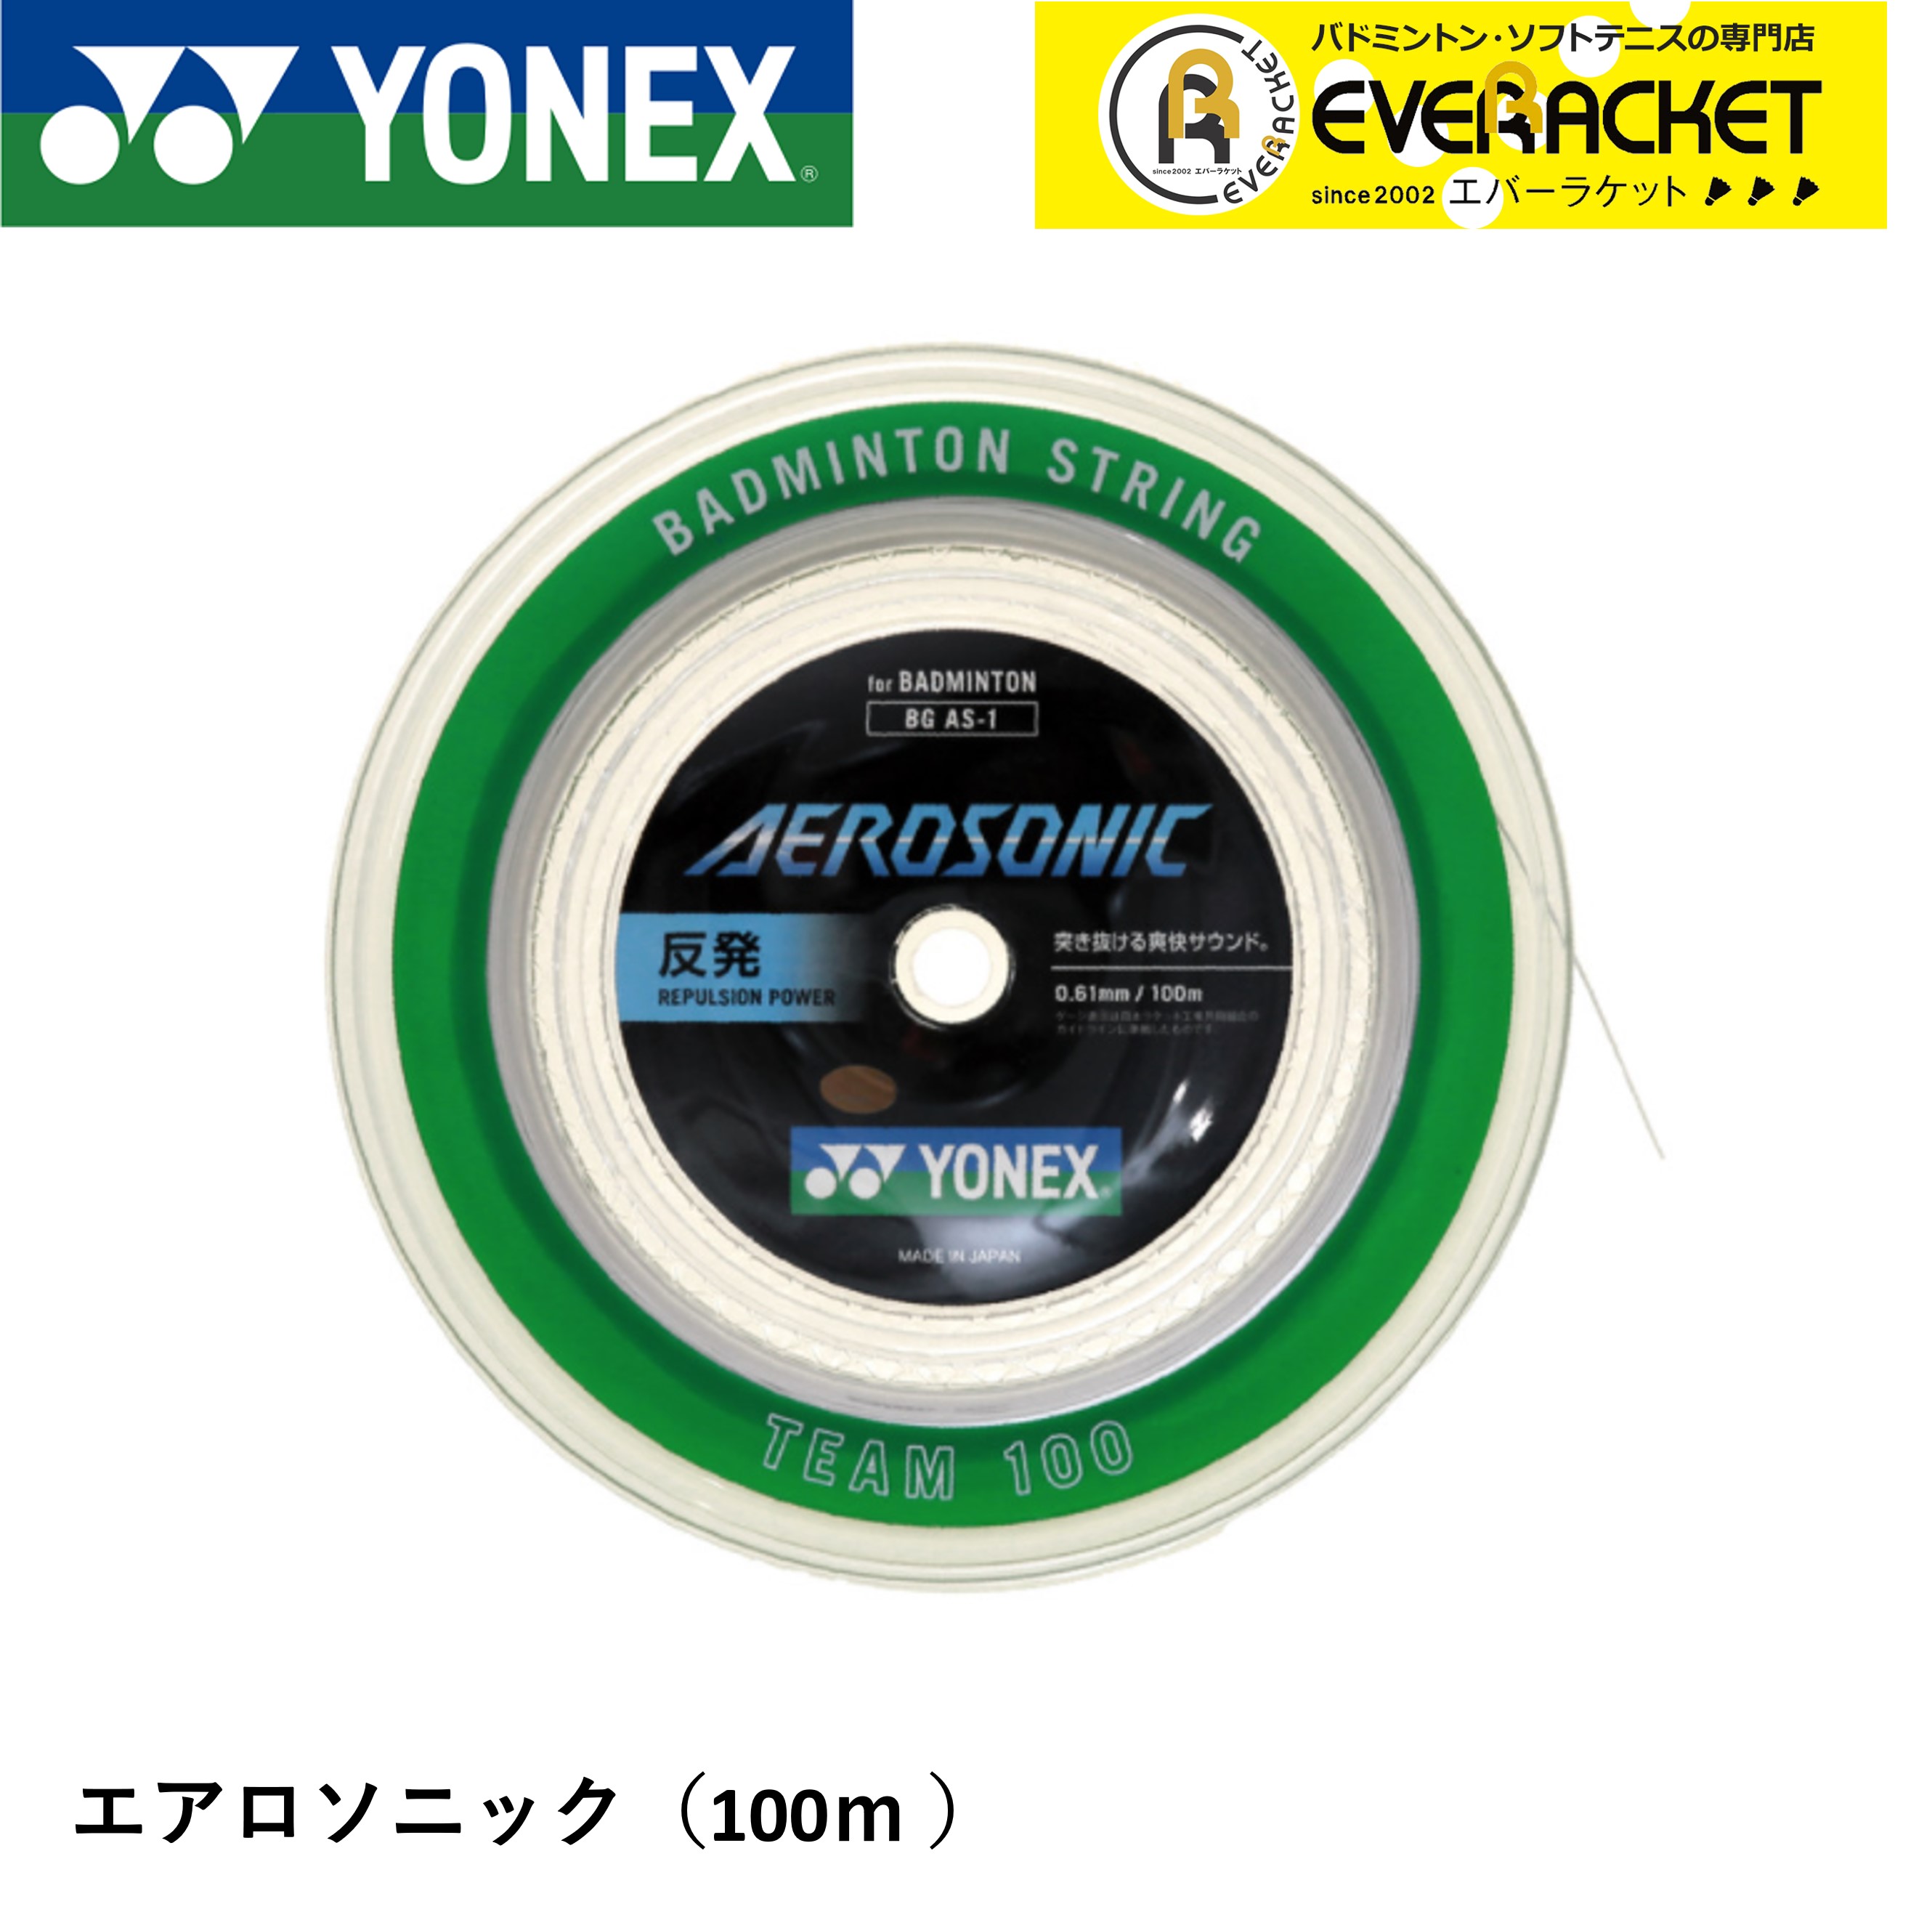 【最短出荷】ヨネックス YONEX バドミントンストリング エアロソニック(チーム100) BGAS-1 バドミントン 100m